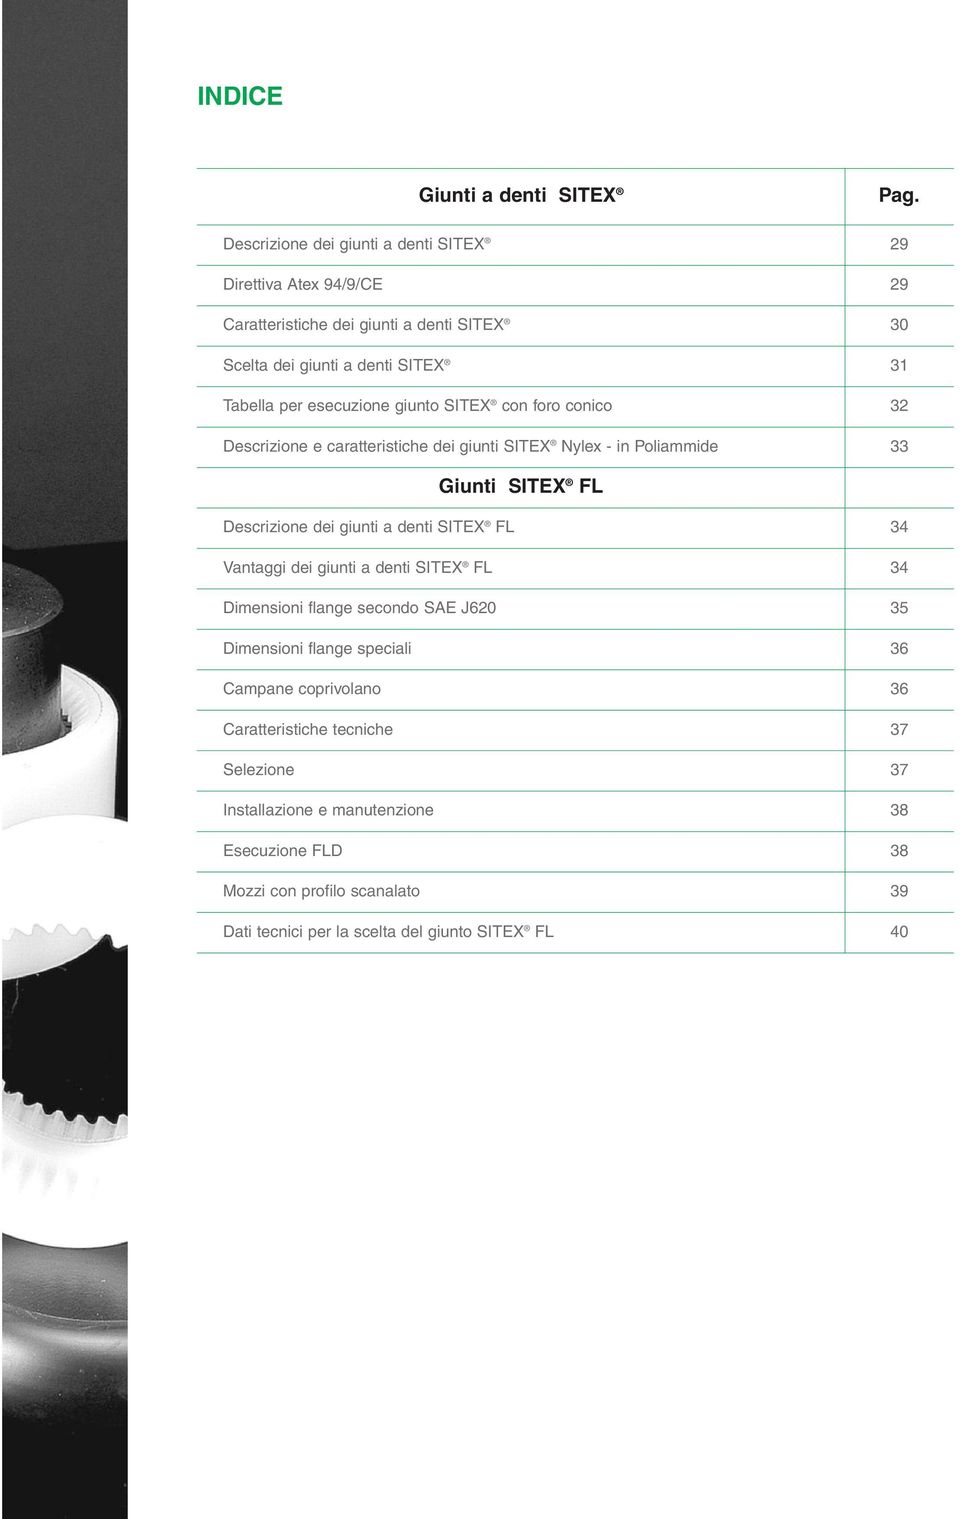 esecuzione giunto SITEX con foro conico 32 escrizione e caratteristiche dei giunti SITEX Nylex - in Poliammide 33 Giunti SITEX F escrizione dei giunti a denti